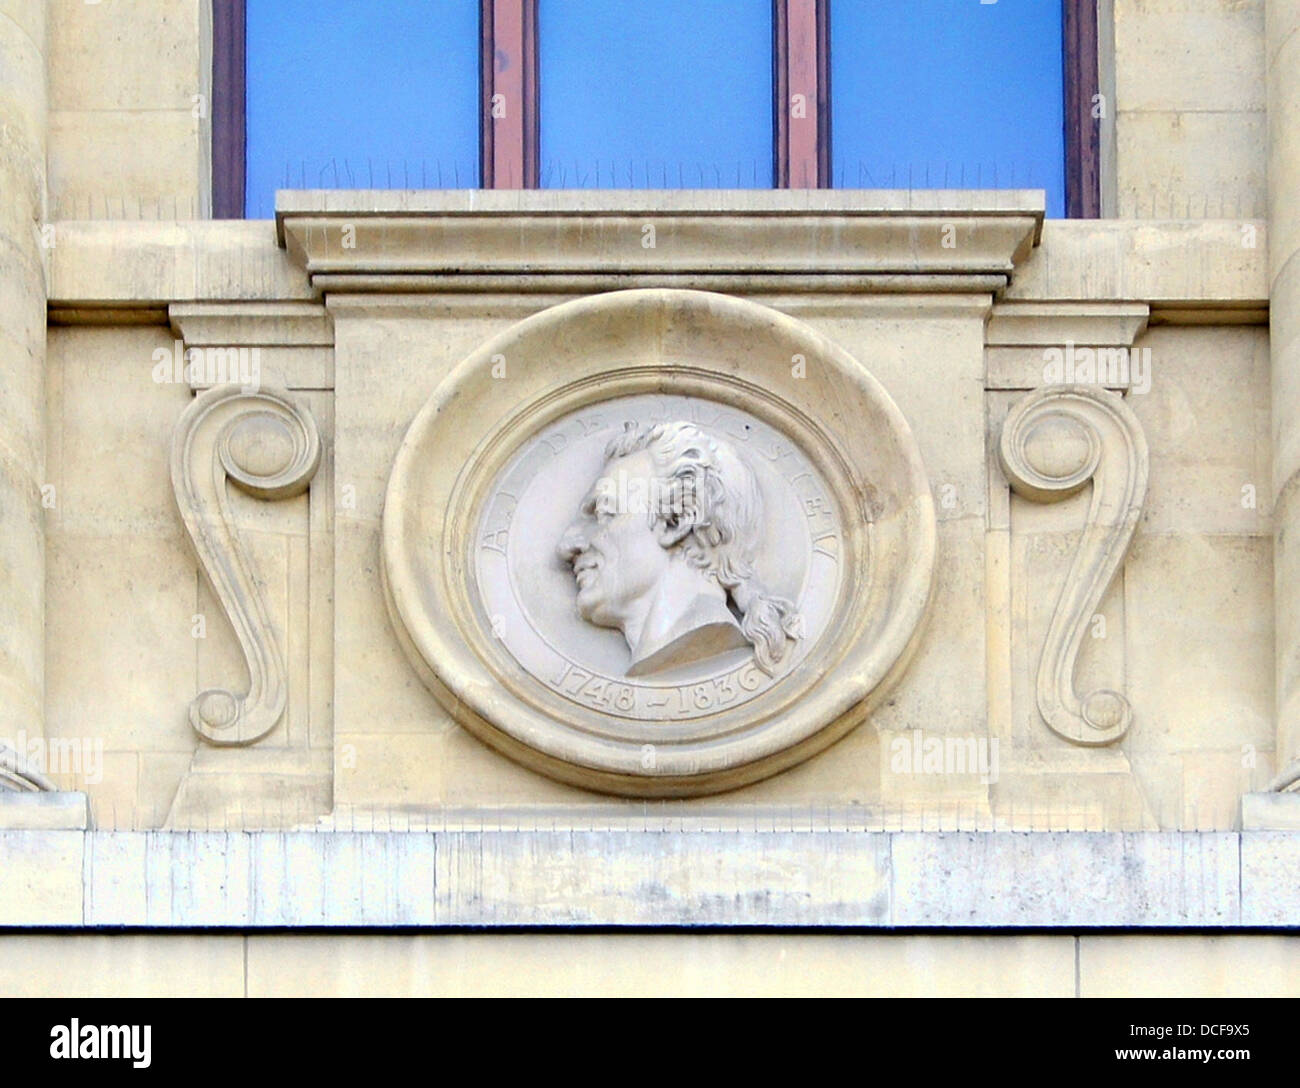 A.L. de Jussieu. Troisième mascaron (à droite) sur la façade de la Grande Galerie de l'évolution dans le Jardin des Plantes de Paris Banque D'Images